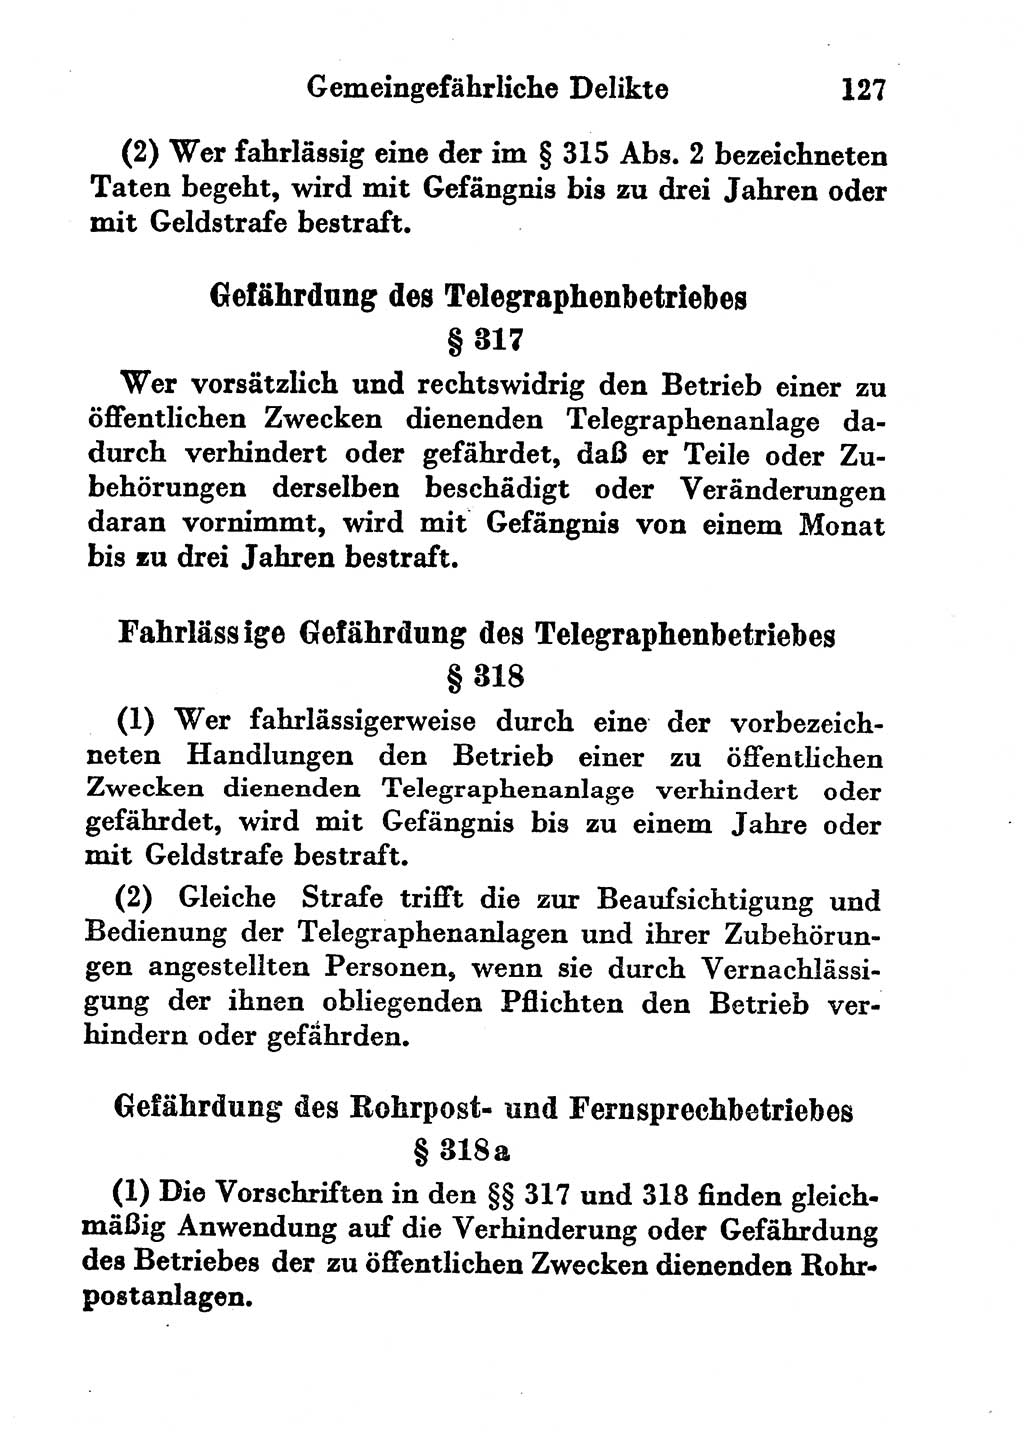 Strafgesetzbuch (StGB) und andere Strafgesetze [Deutsche Demokratische Republik (DDR)] 1956, Seite 127 (StGB Strafges. DDR 1956, S. 127)